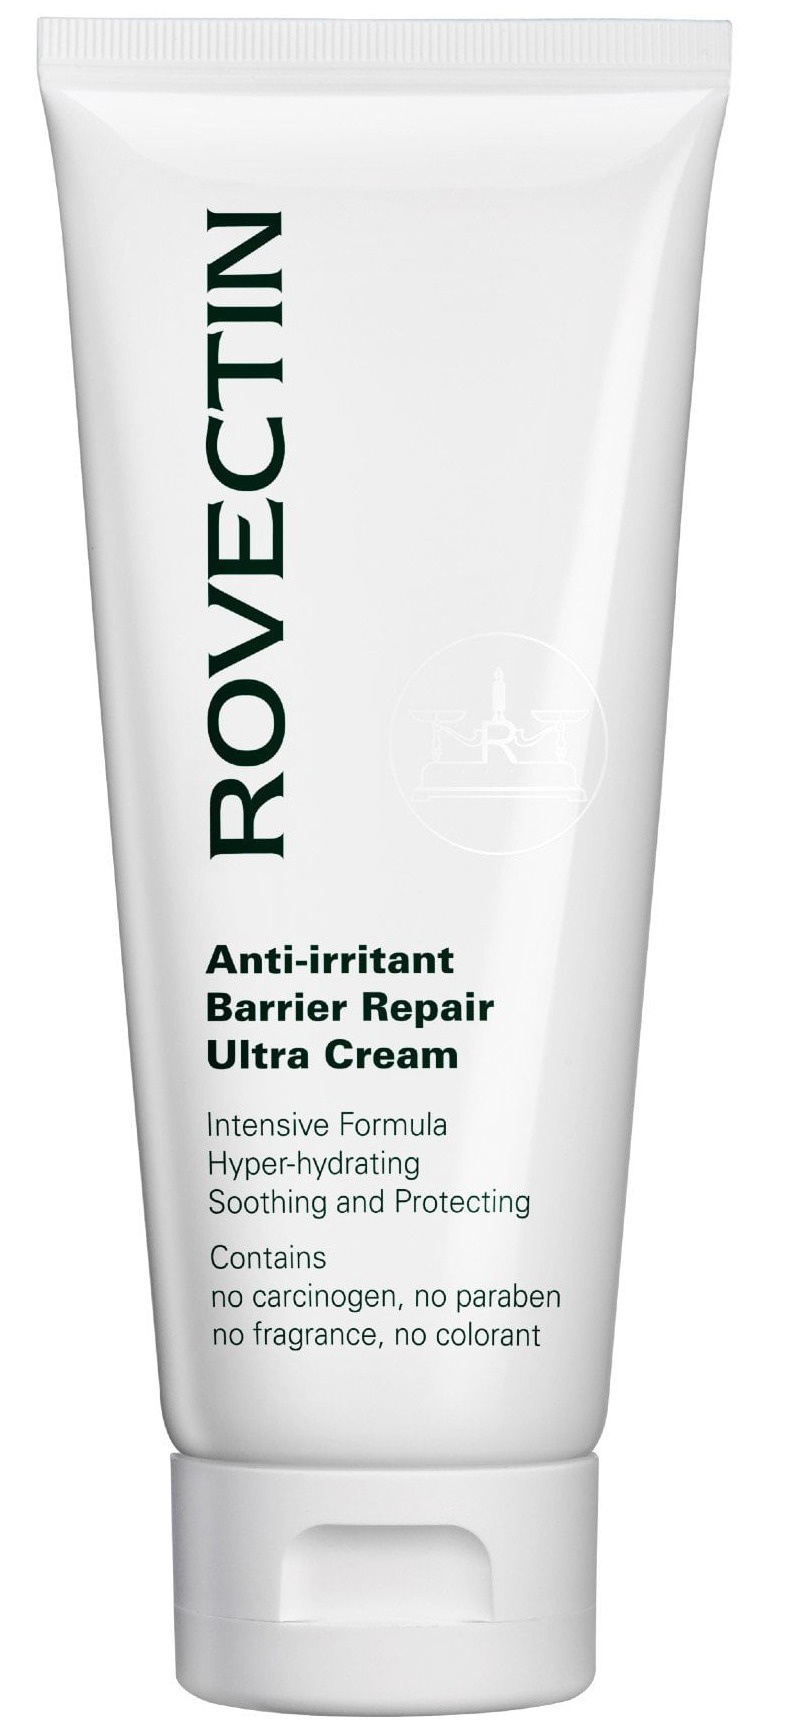 rovectin Anti-irritant Barrier Repair Ultra Cream